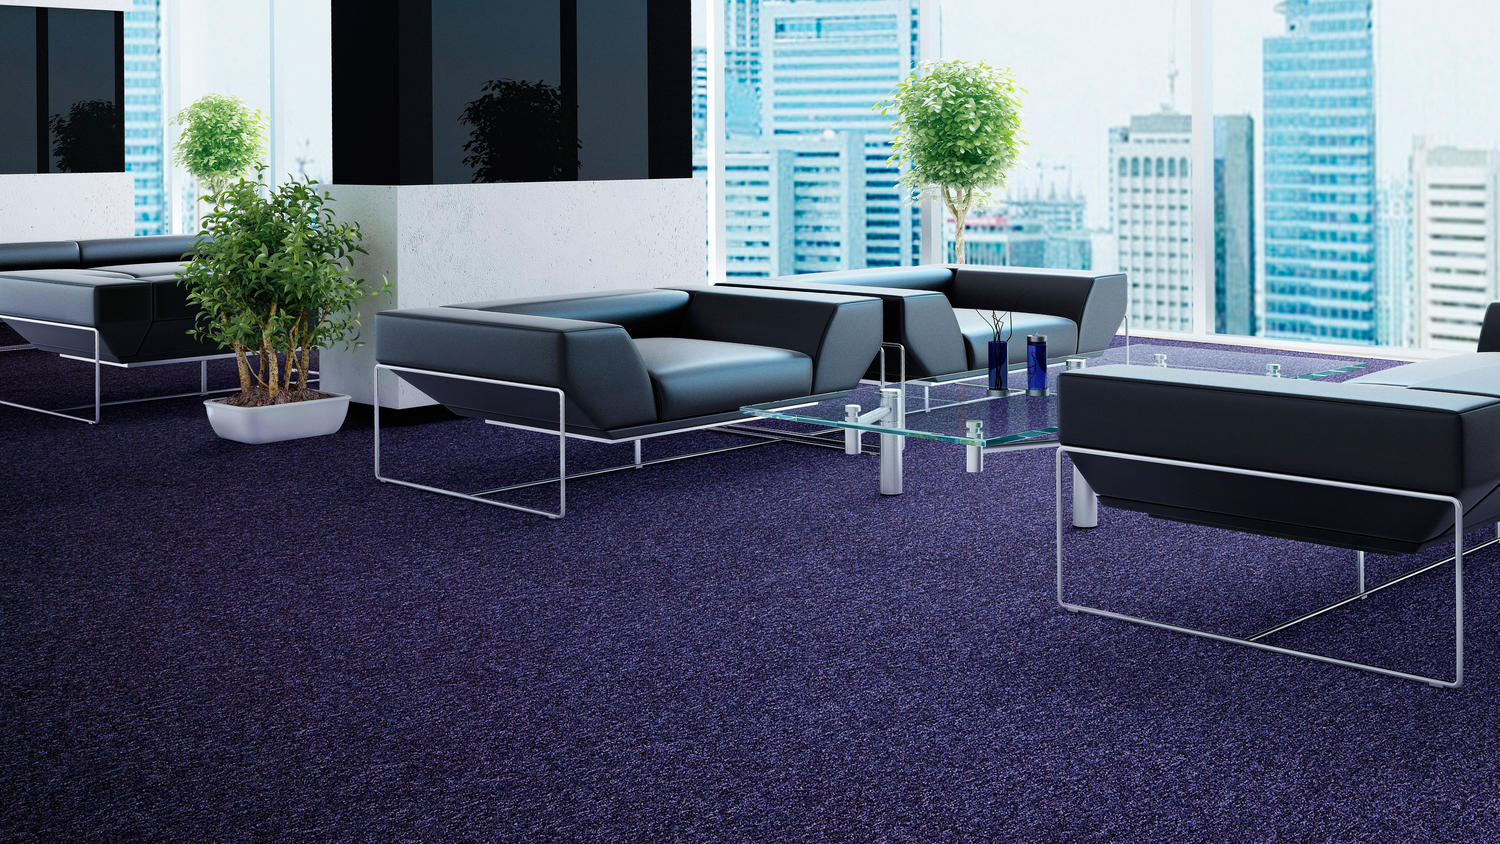 Indigo Carpet Tiles Underneath Blue Modular Sofas